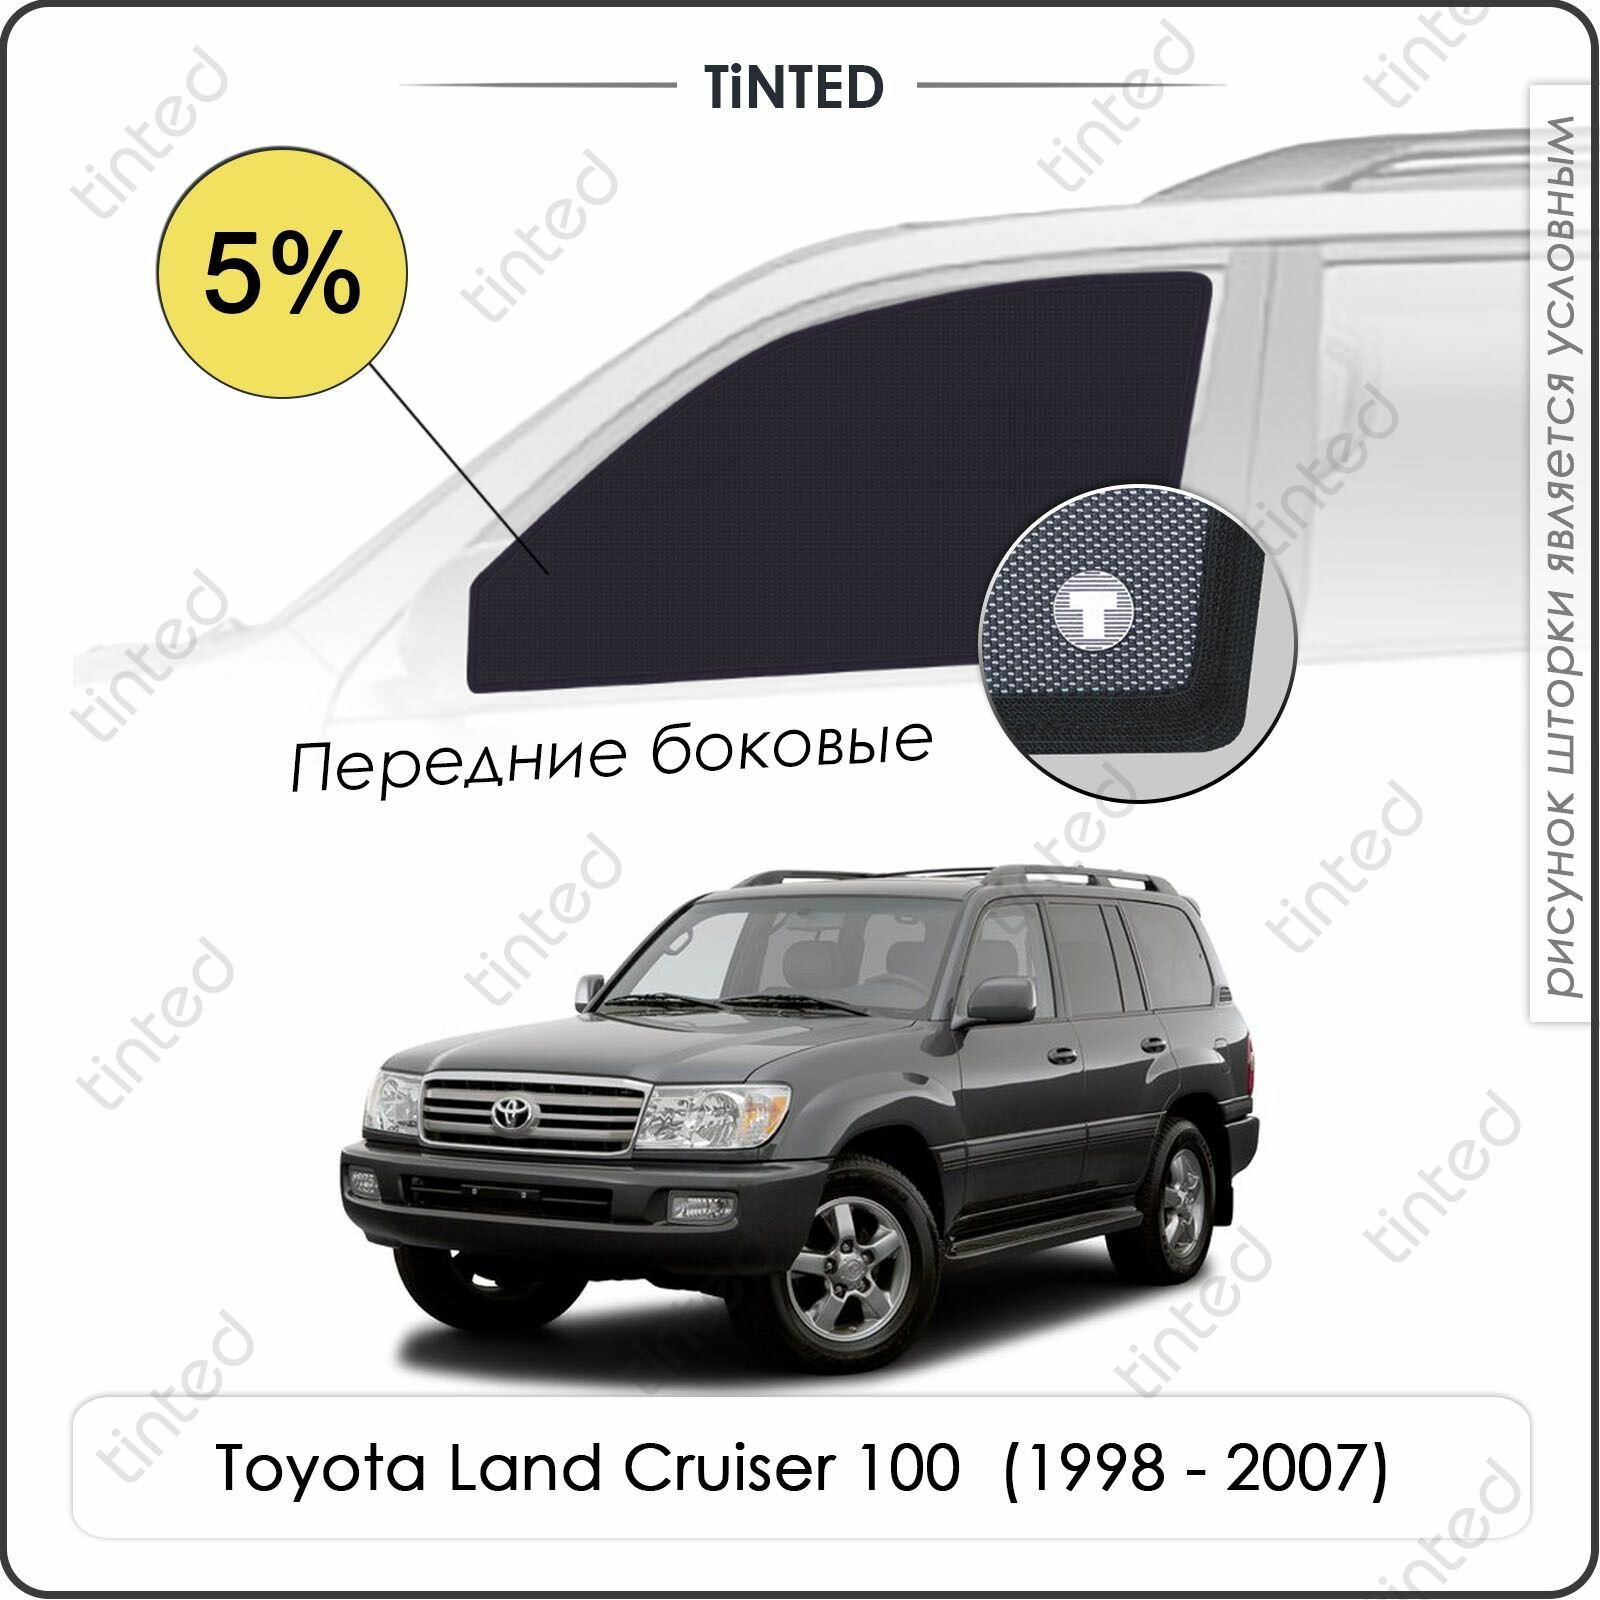 Шторки на автомобиль солнцезащитные Toyota Land Cruiser 100 Внедорожник 5дв. (1998 - 2007) на передние двери 5% сетки от солнца в машину тойота лэнд крузер Каркасные автошторки Premium